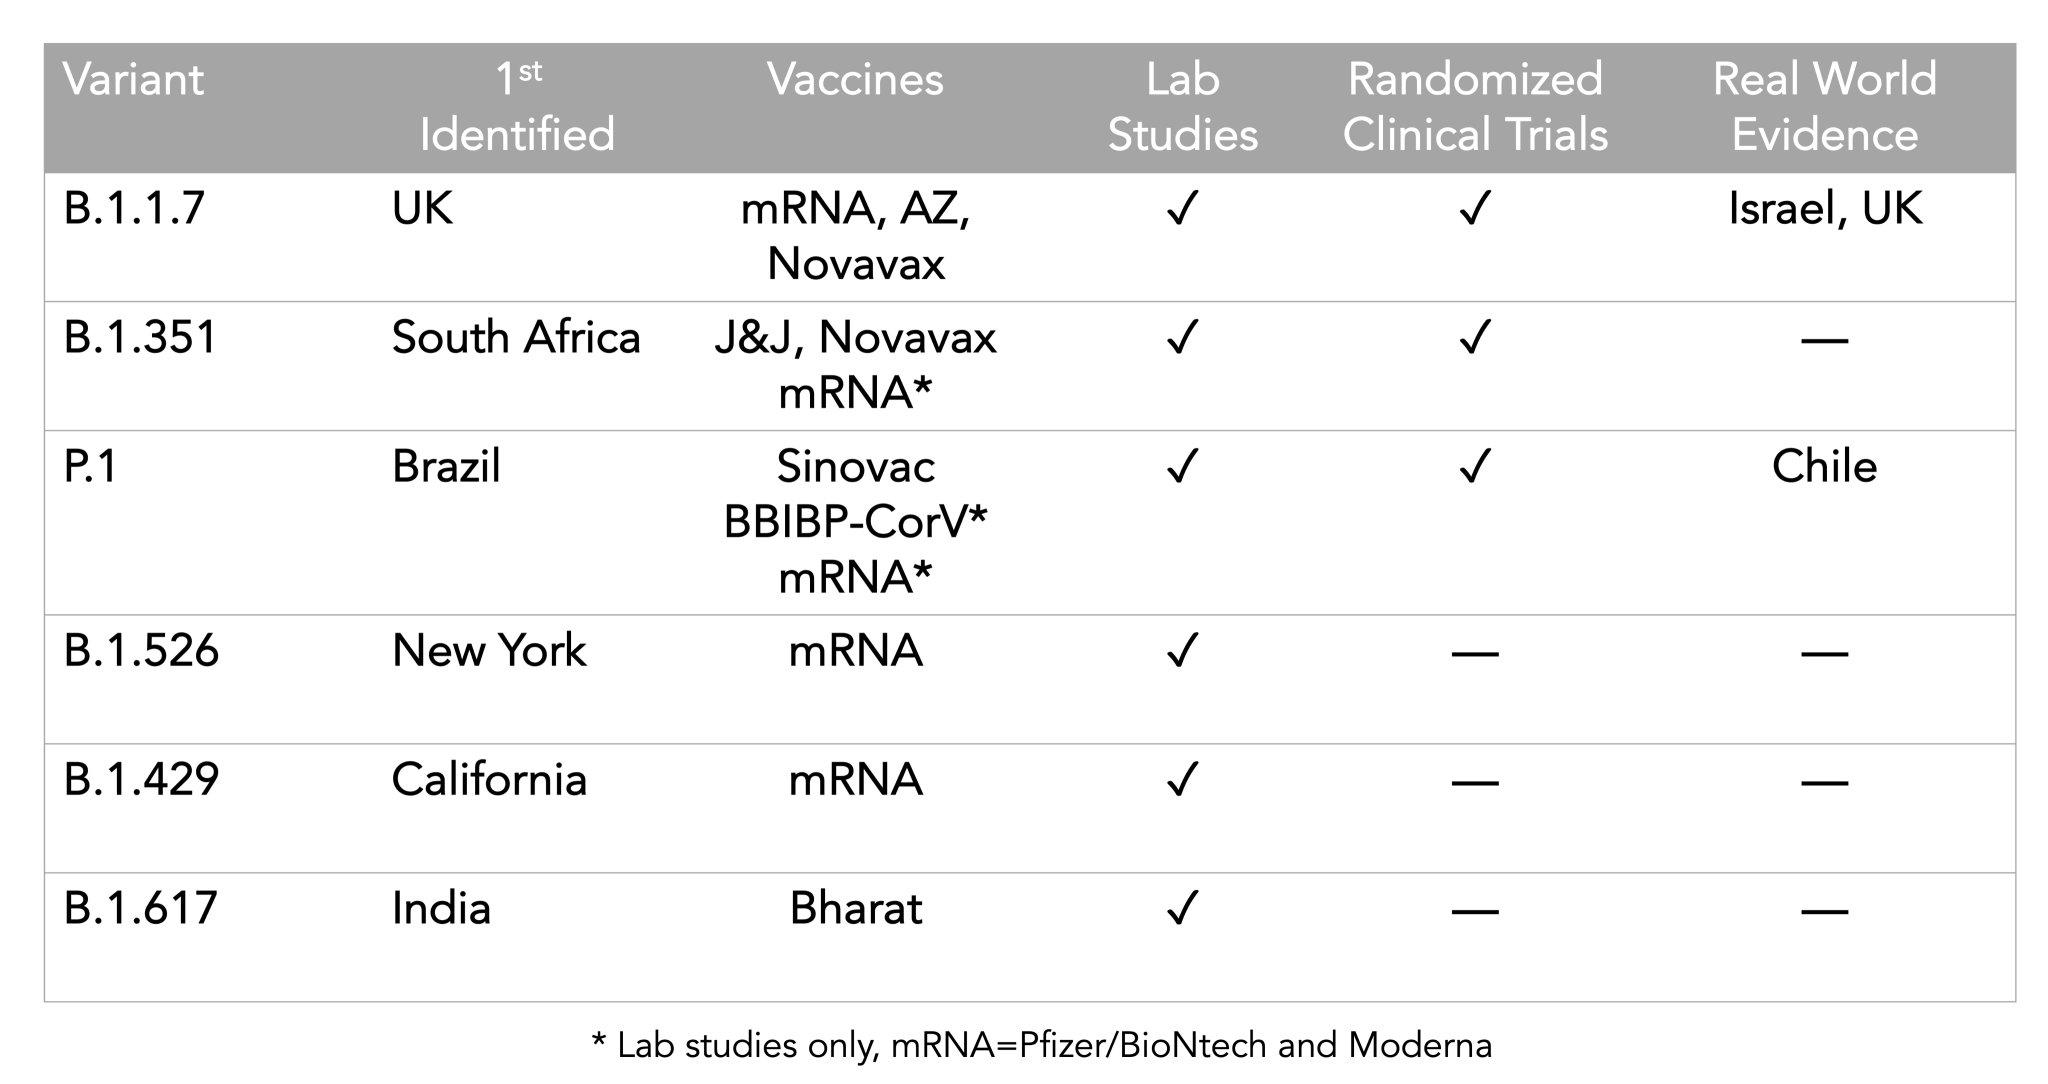 szczepionki vs. warianty tabela